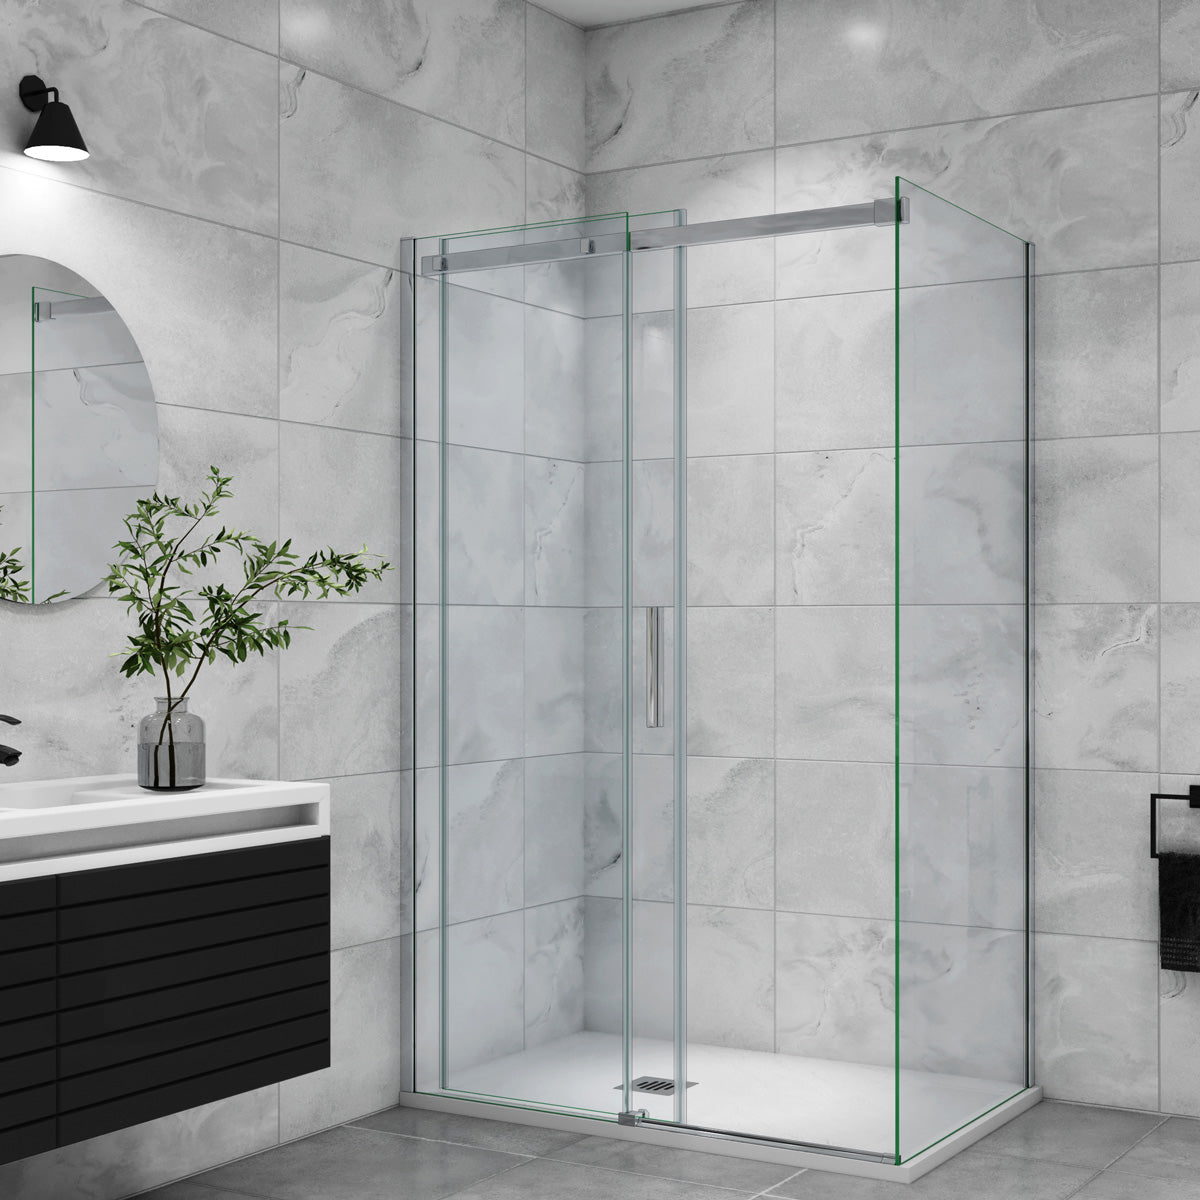 Duschtür+Seitenwand Schiebetür 160x80 cm Glasstärke 6mm Dusche Duschabtrennung Duschkabine